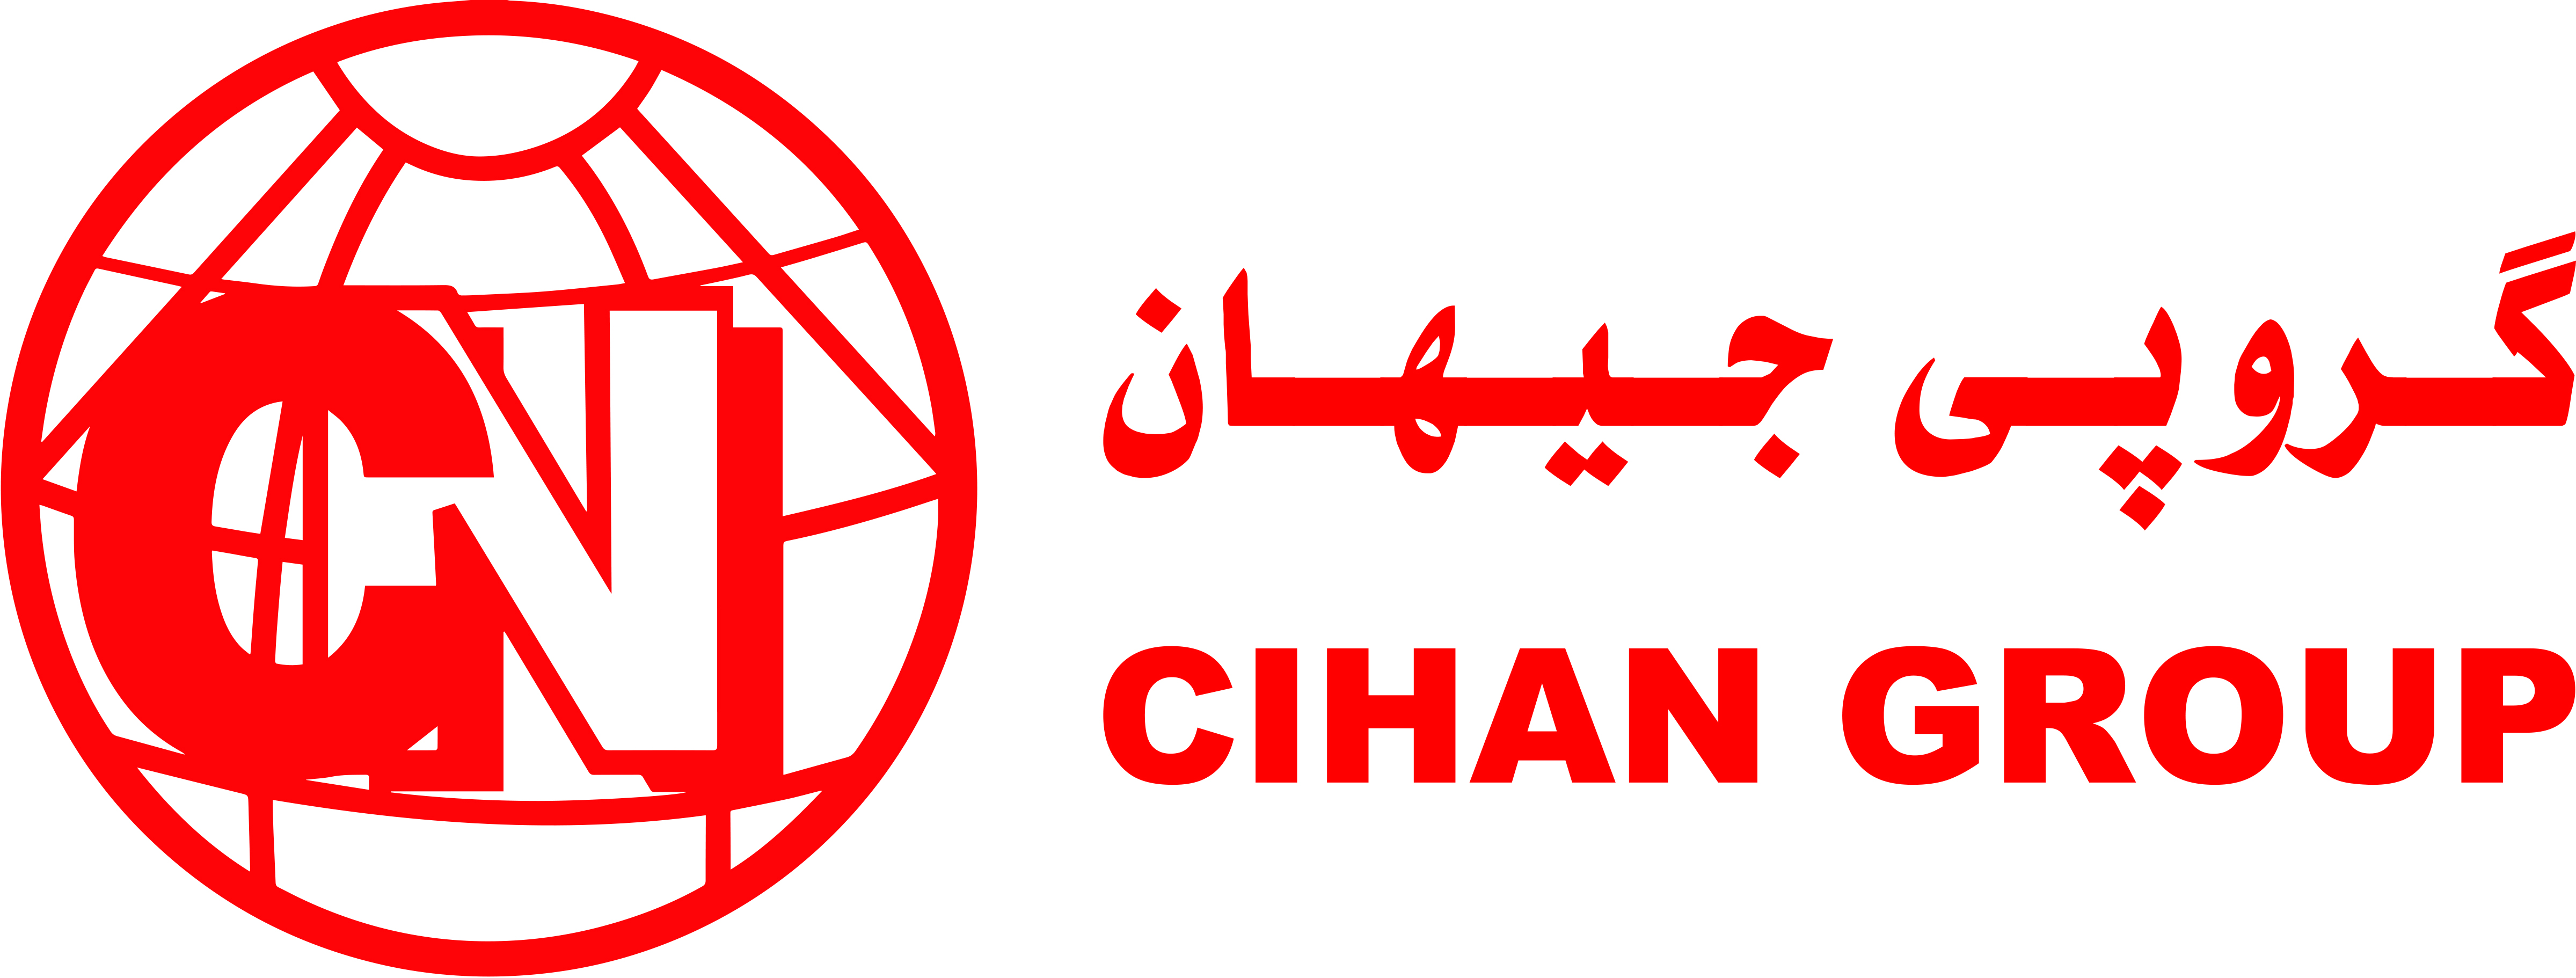 Cihan Group logo